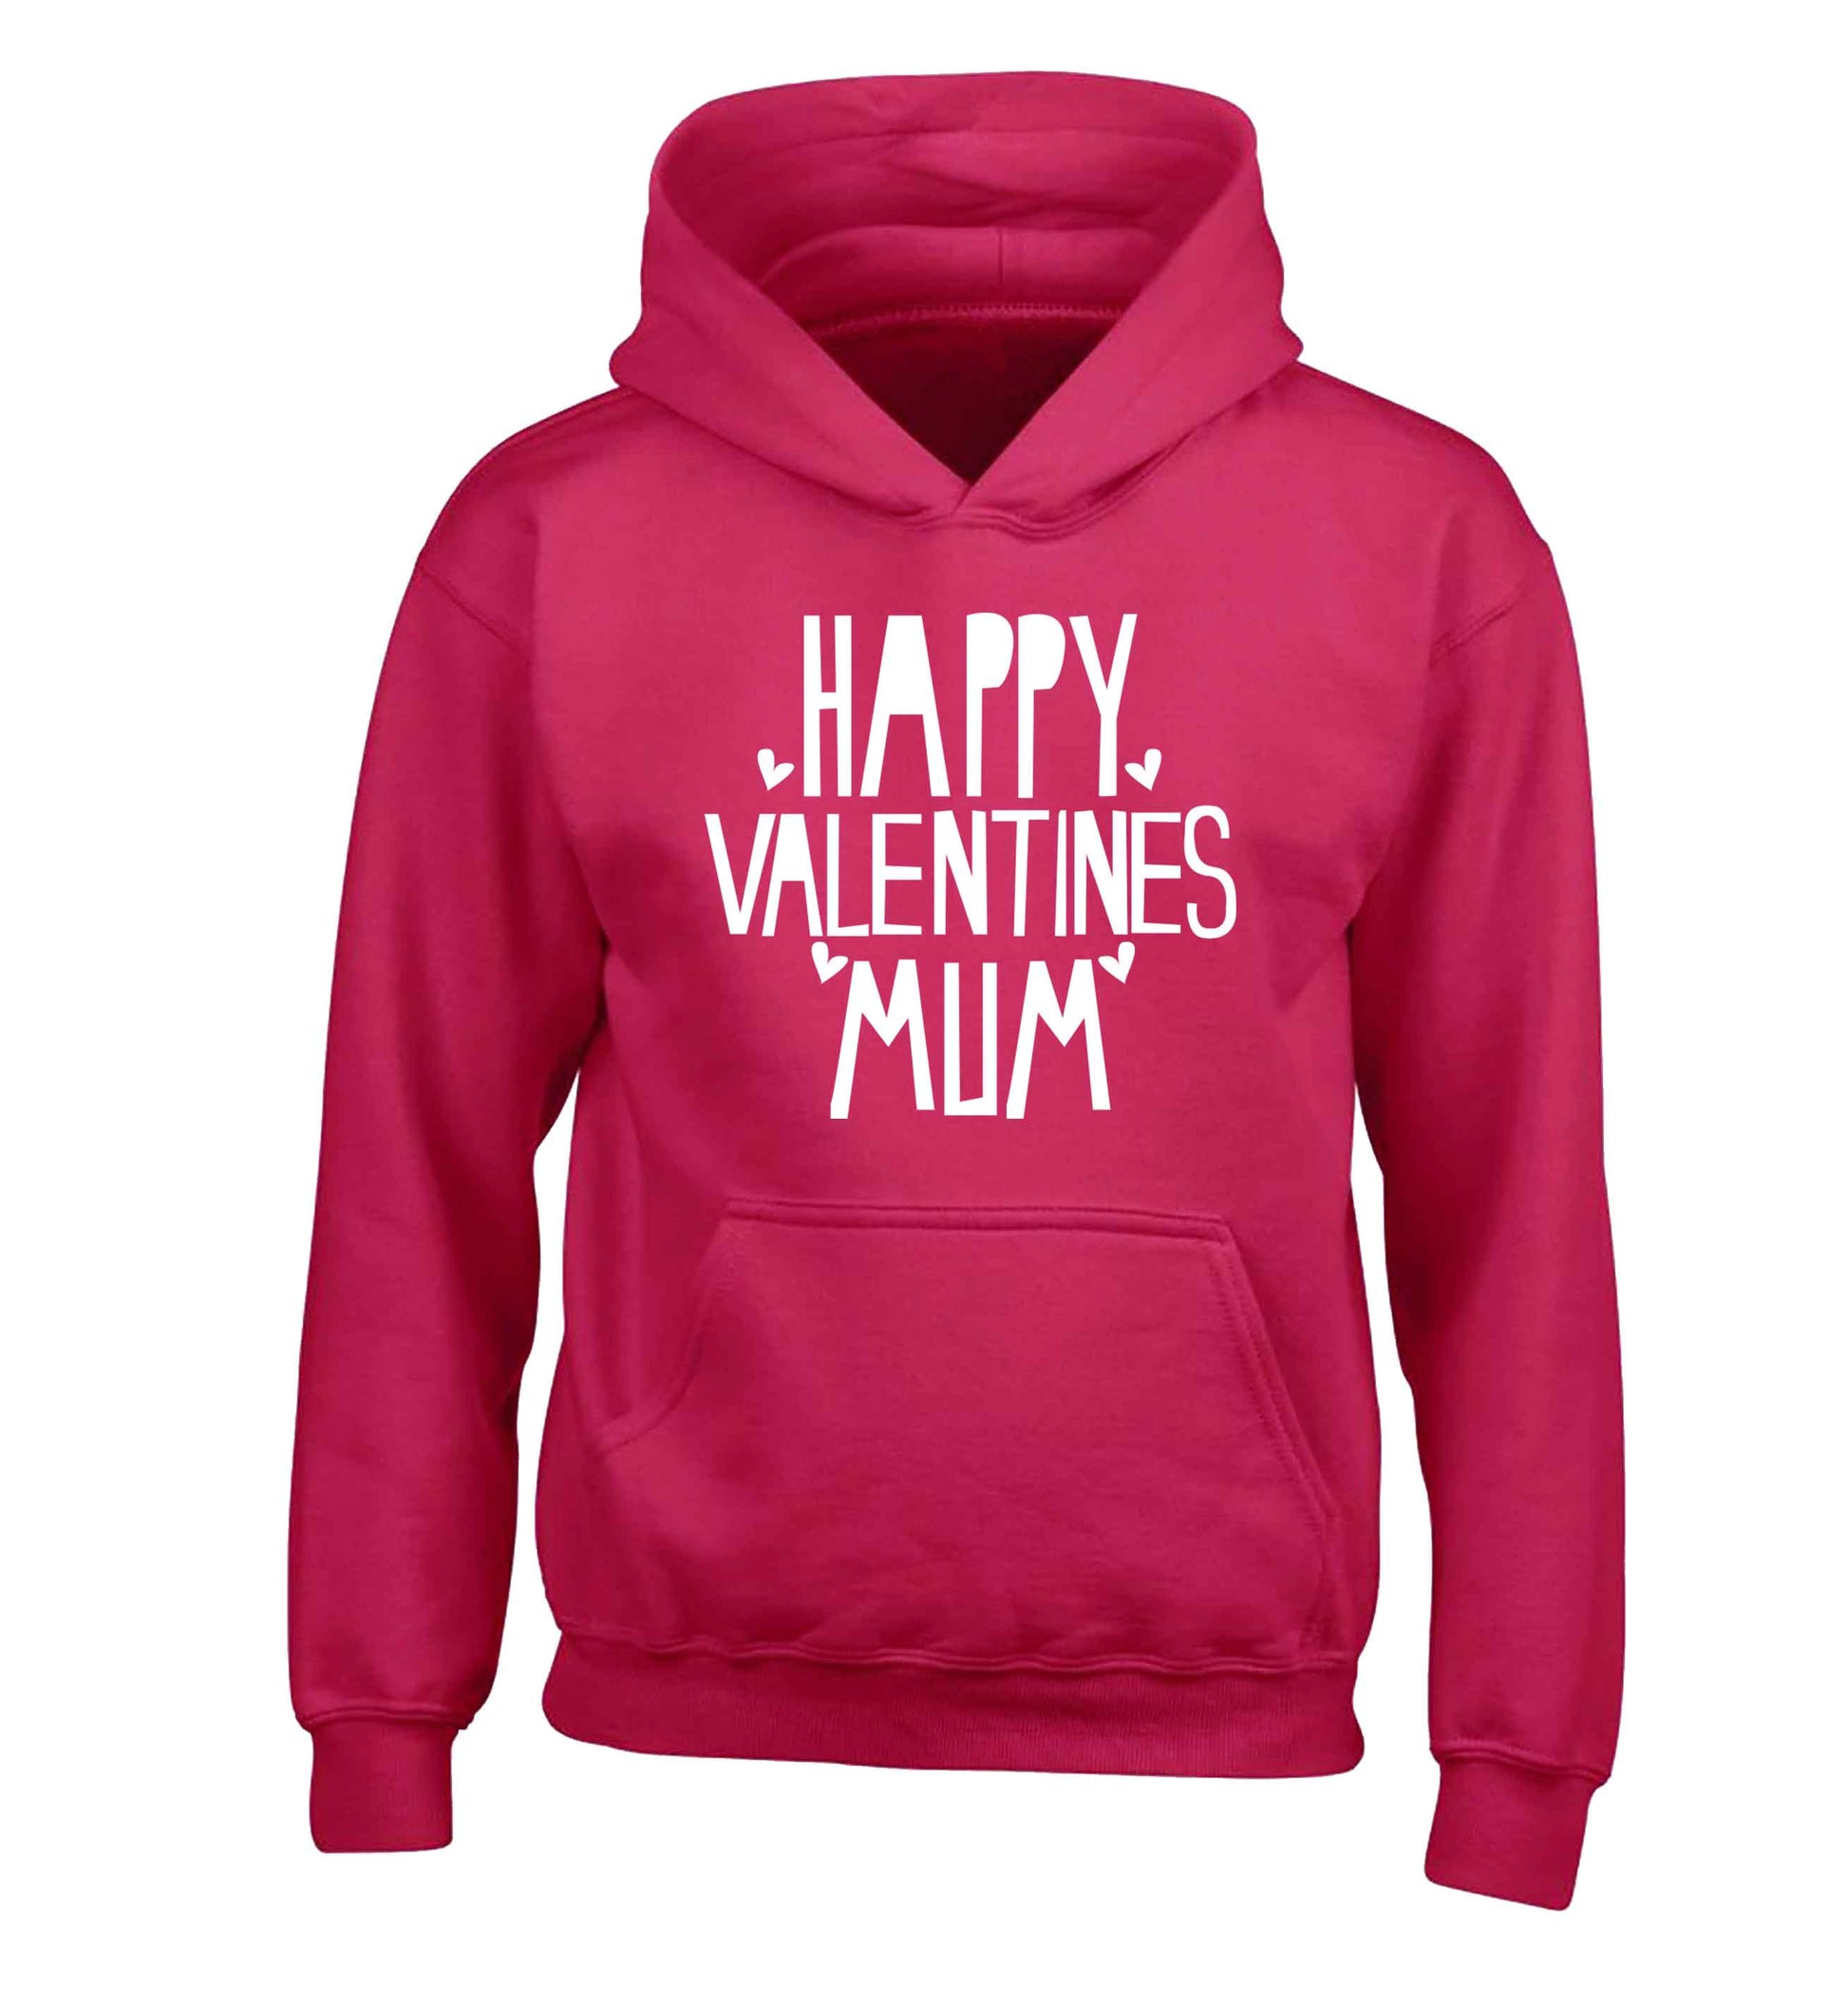 Happy valentines mum children's pink hoodie 12-13 Years